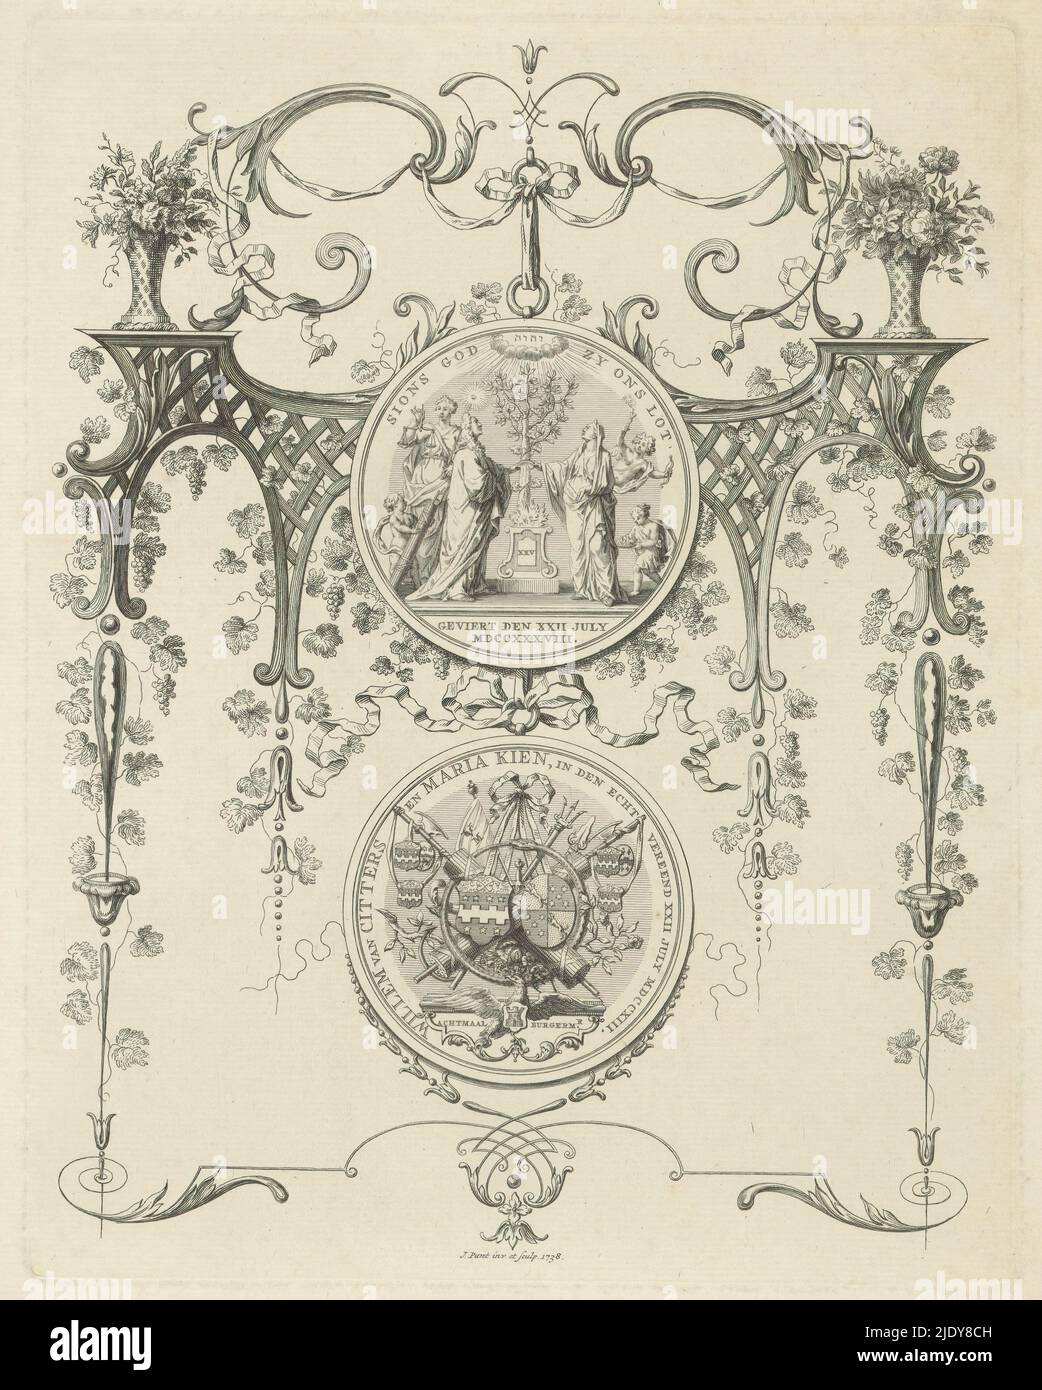 Representación decorativa con la medalla en el aniversario de bodas de plata  de Willem van Citters y Maria Kien, 1738. Muestra decorativa con la  declaración de boda en el matrimonio de veinticinco